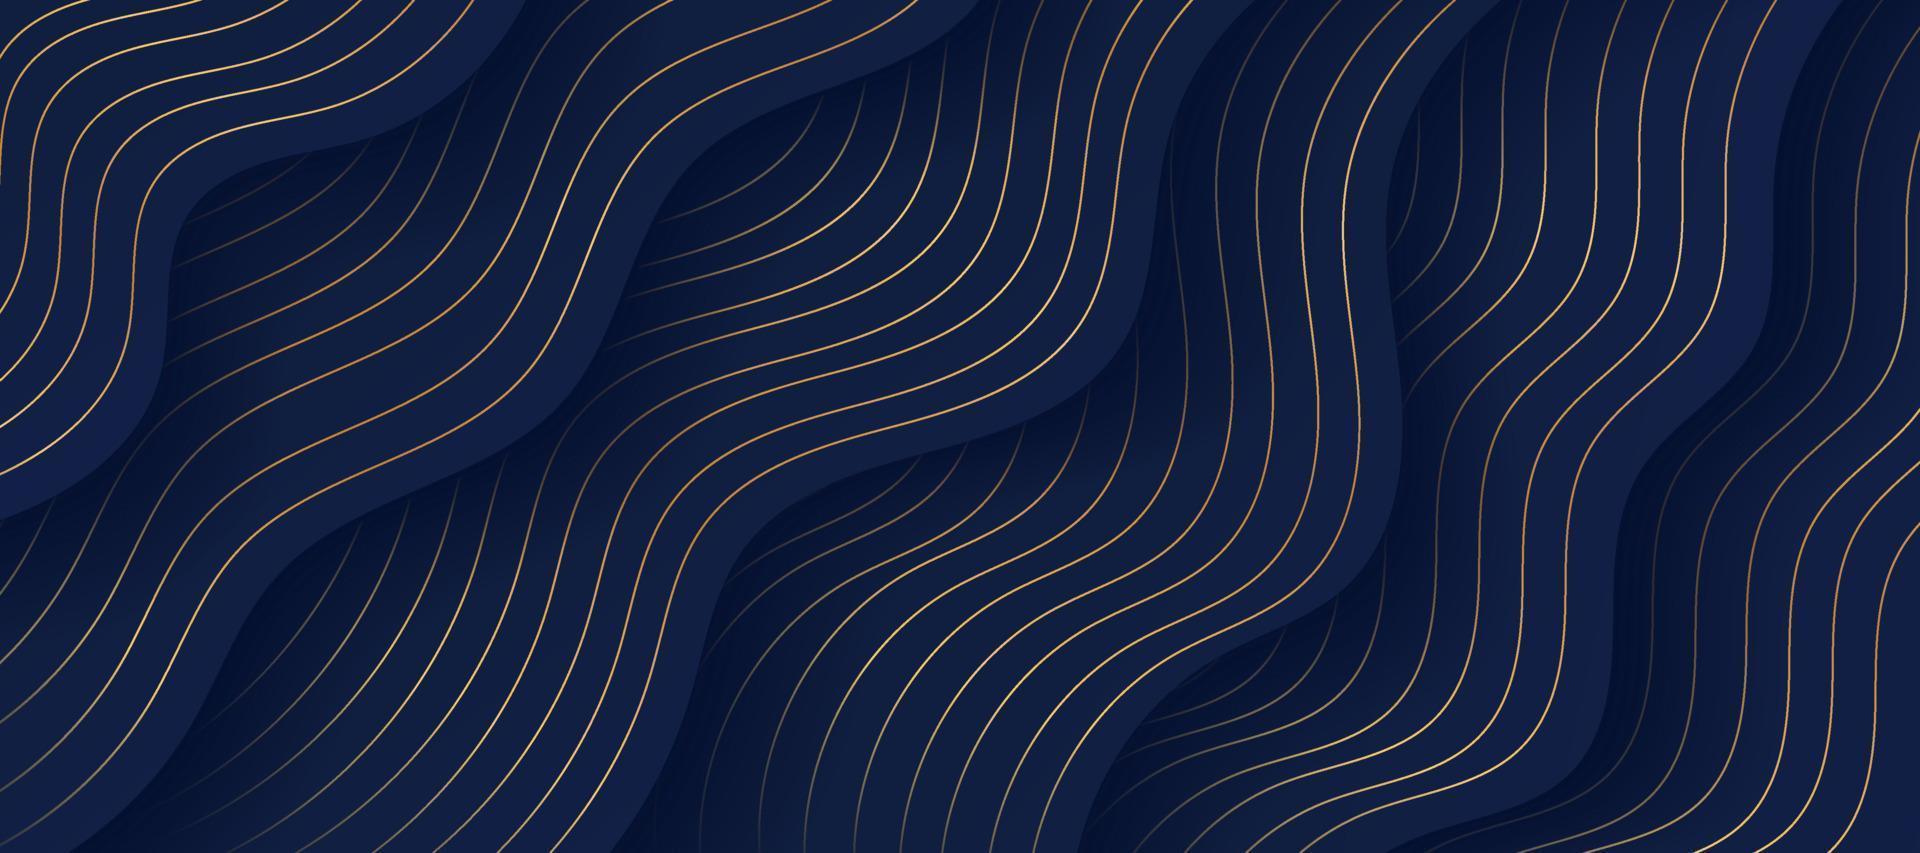 abstrakt flytande vågig form på mörk marinblå bakgrund, gyllene linjer dekorerar. lyxig skiktad kurvmönsterdesign. du kan använda för omslagsbroschyrmall, affisch, bannerwebb, tryckt annons. eps10 vektor